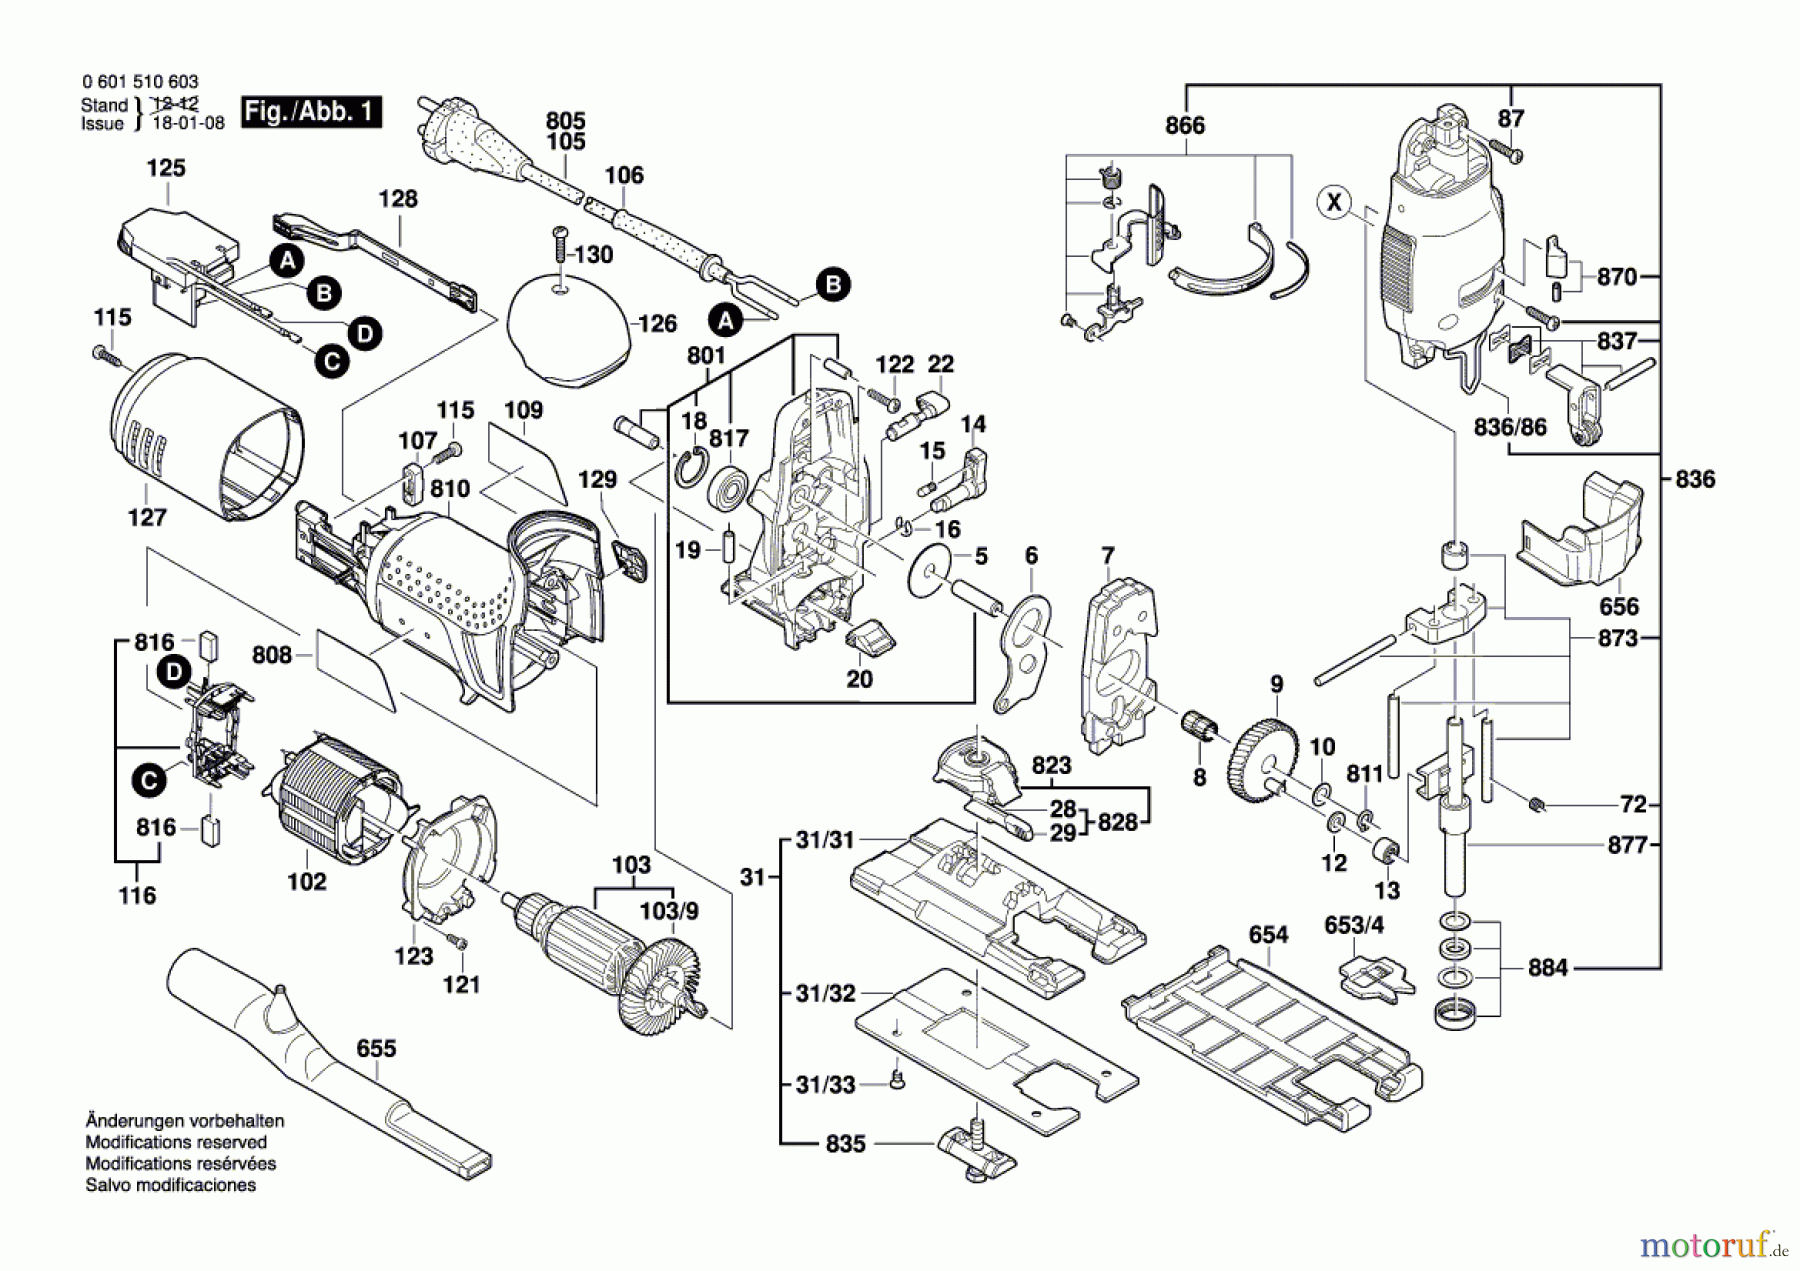  Bosch Werkzeug Pendelstichsäge GST 120 E Seite 1